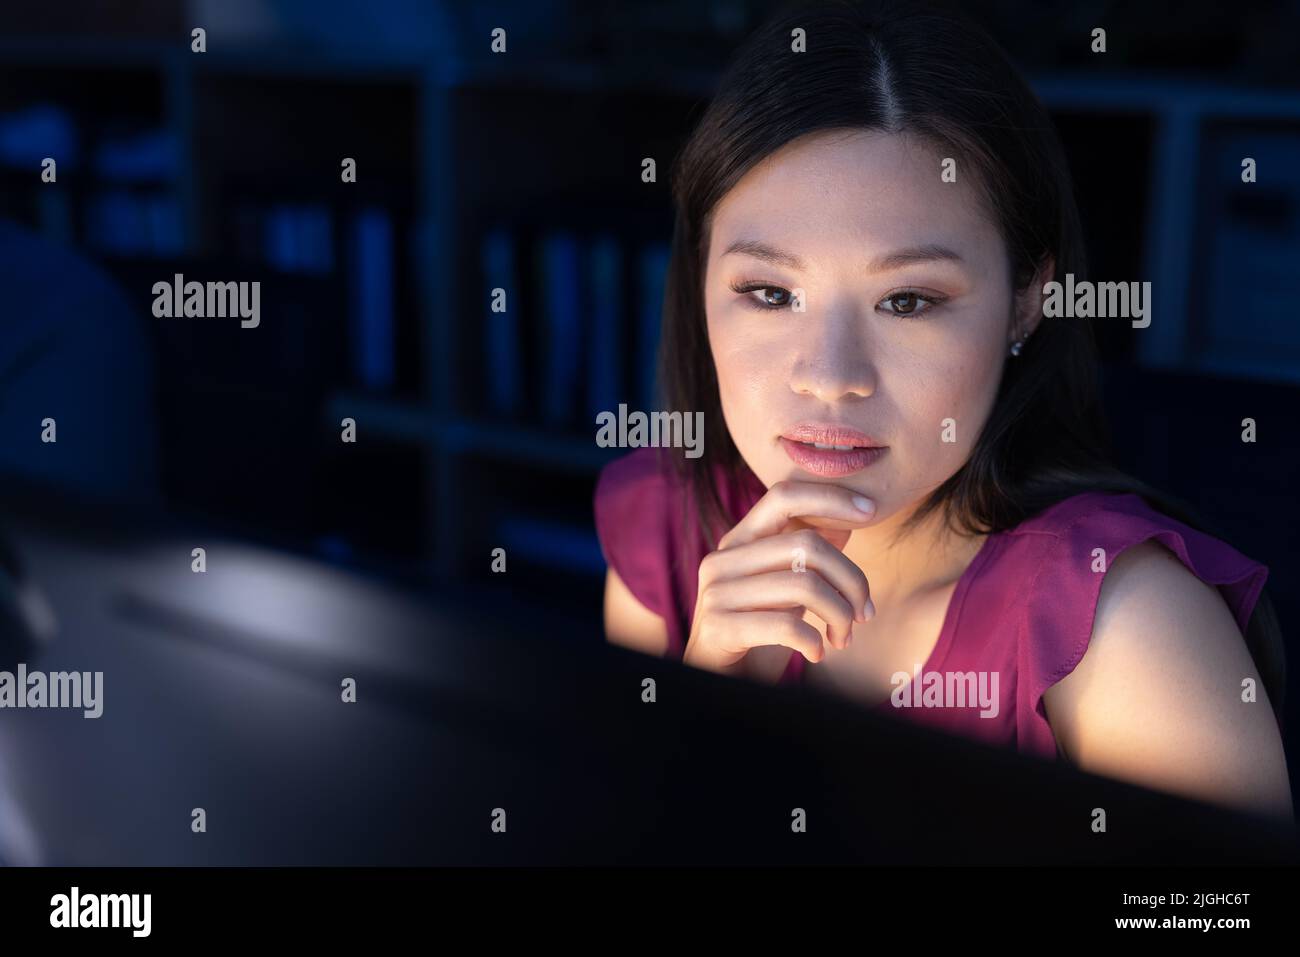 Premuroso professionista asiatico con mano sul mento guardando lo schermo del computer in ufficio di notte Foto Stock